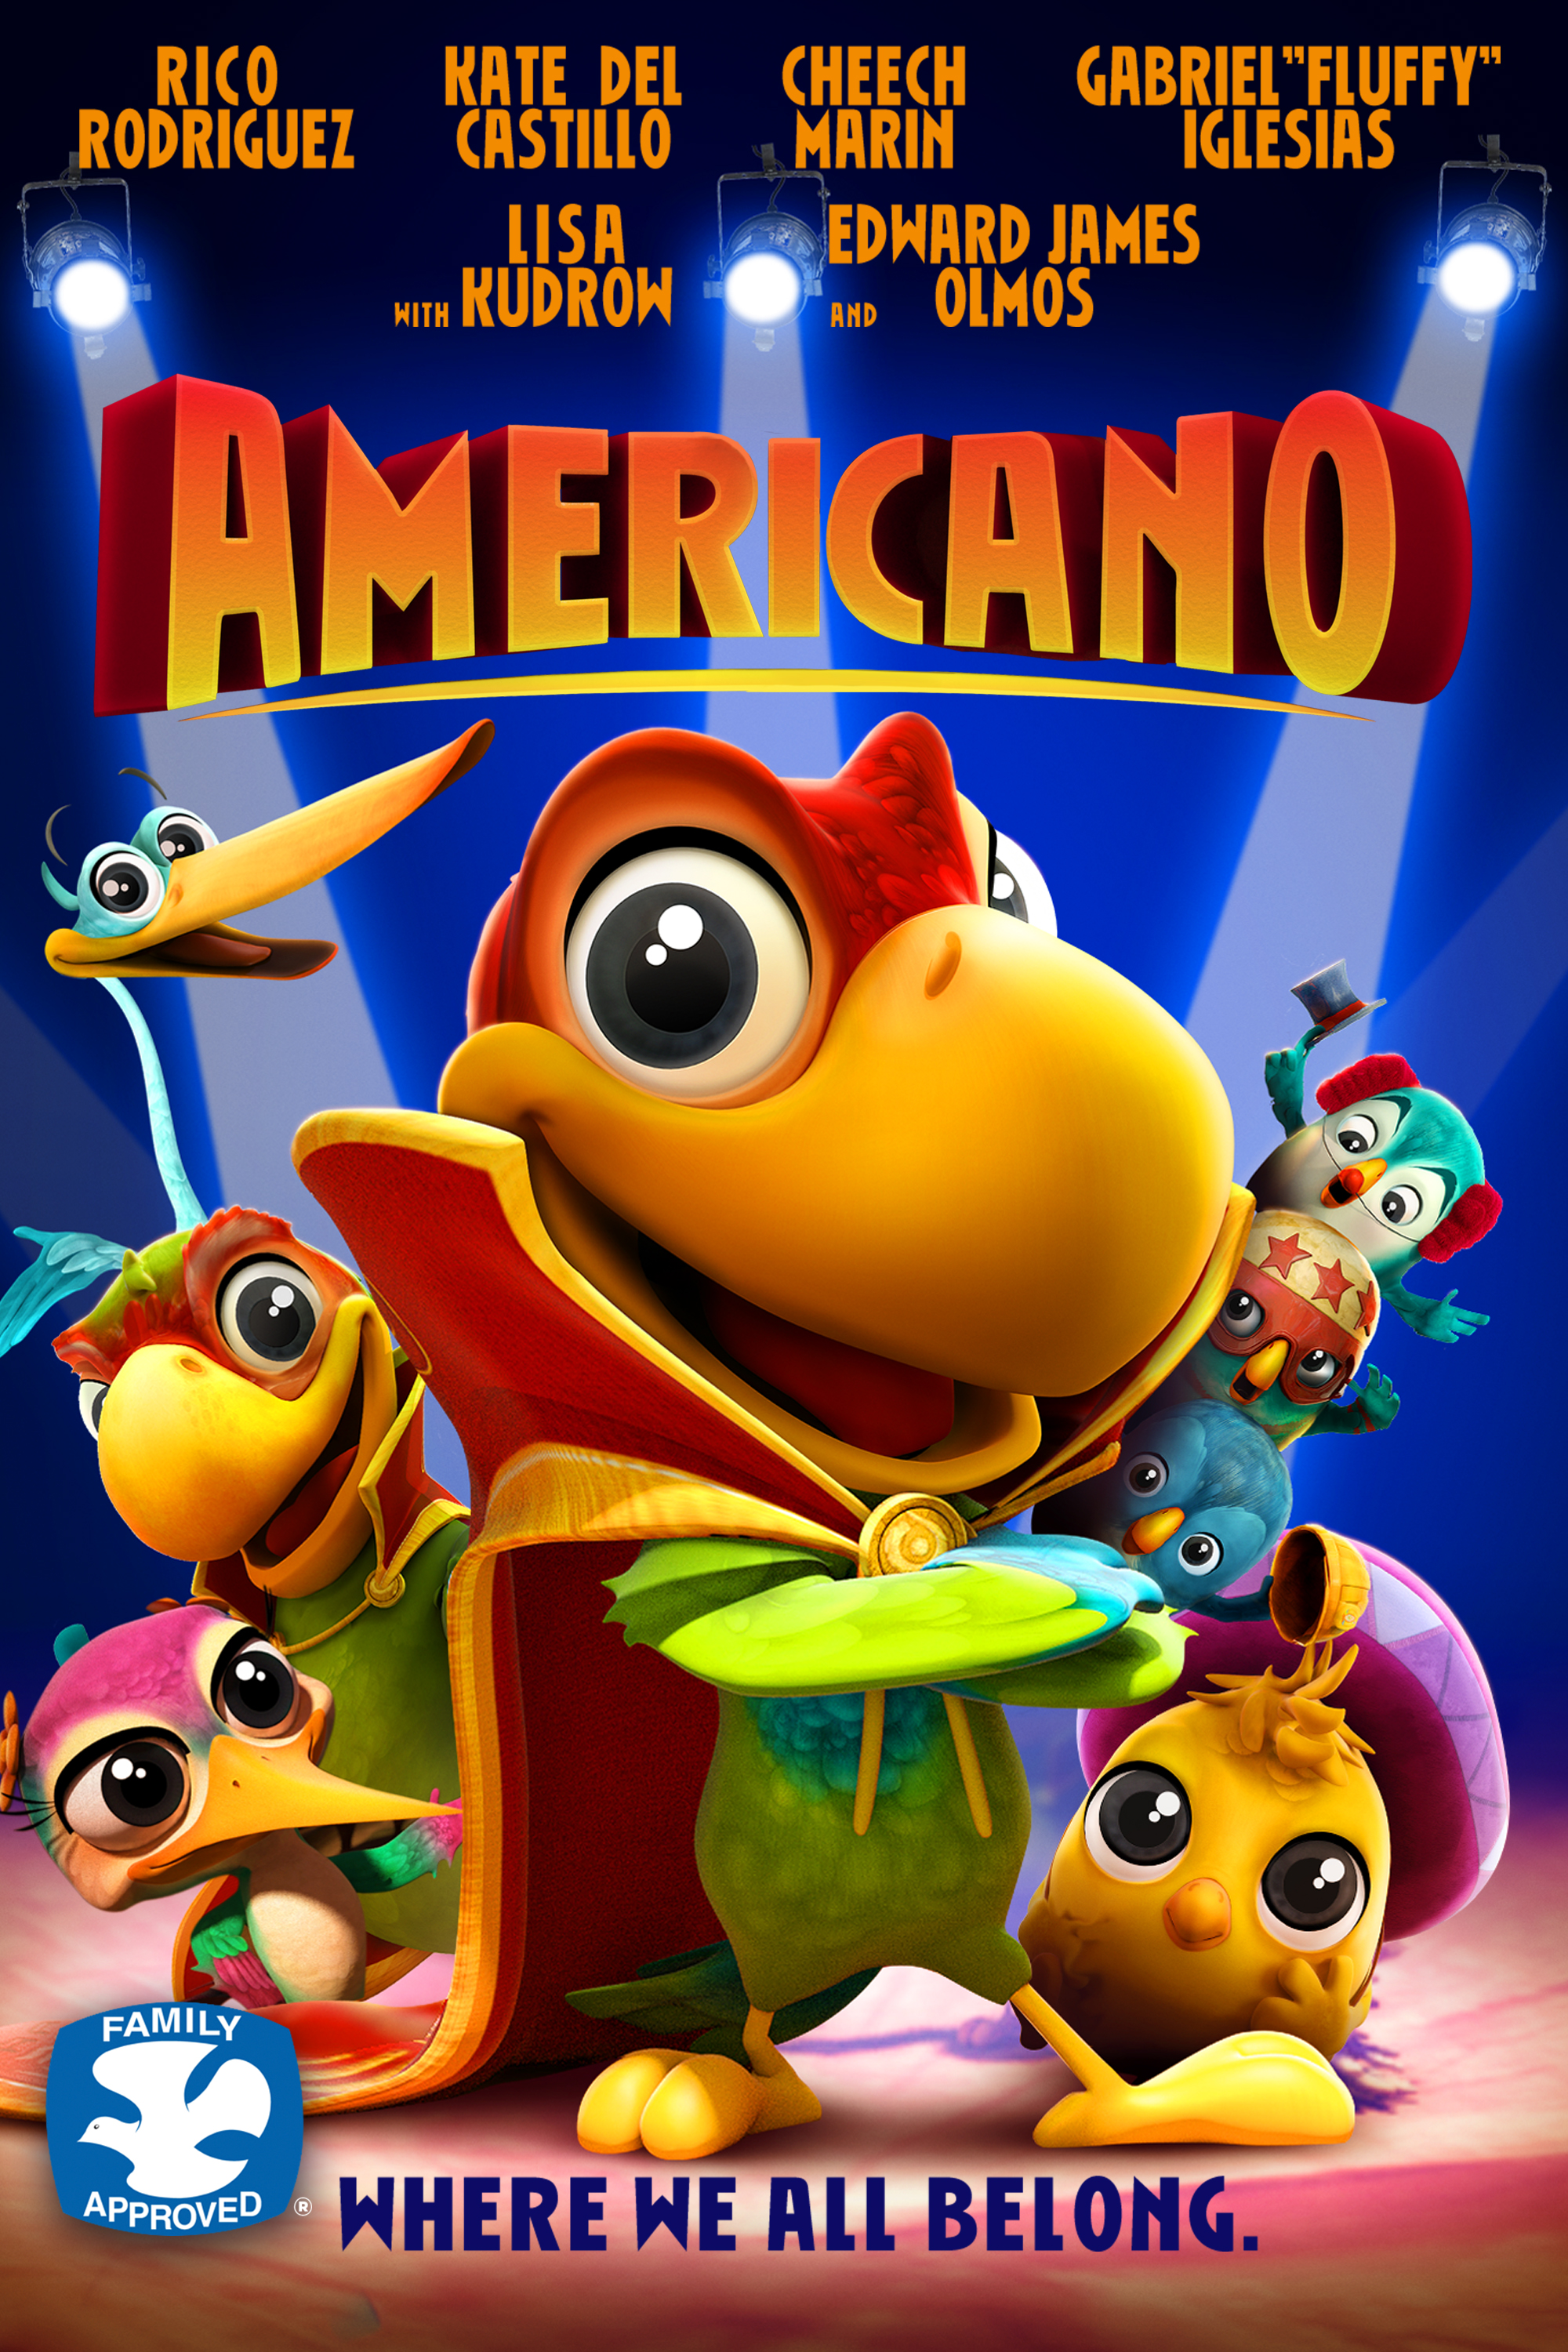 El americano the movie 2016